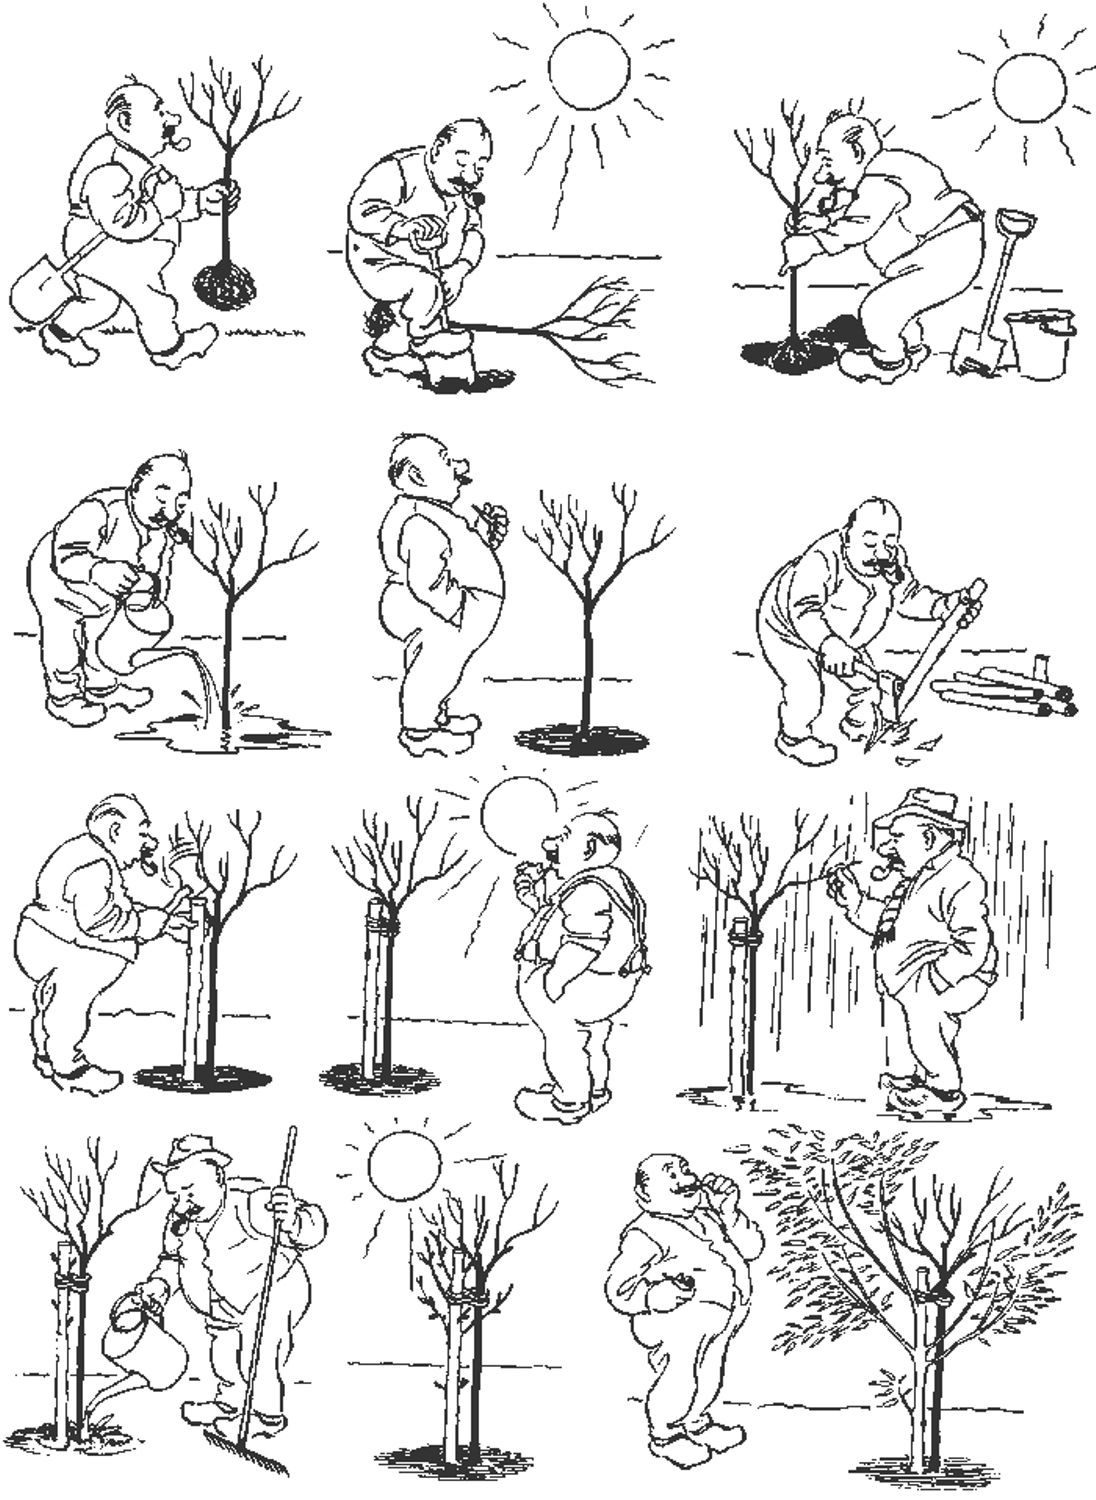 Труд людей весной задания для дошкольников. Бидструп радости садоводства. Херлуф Бидструп. Методика последовательность картинок. Карикатуры Бидструпа.